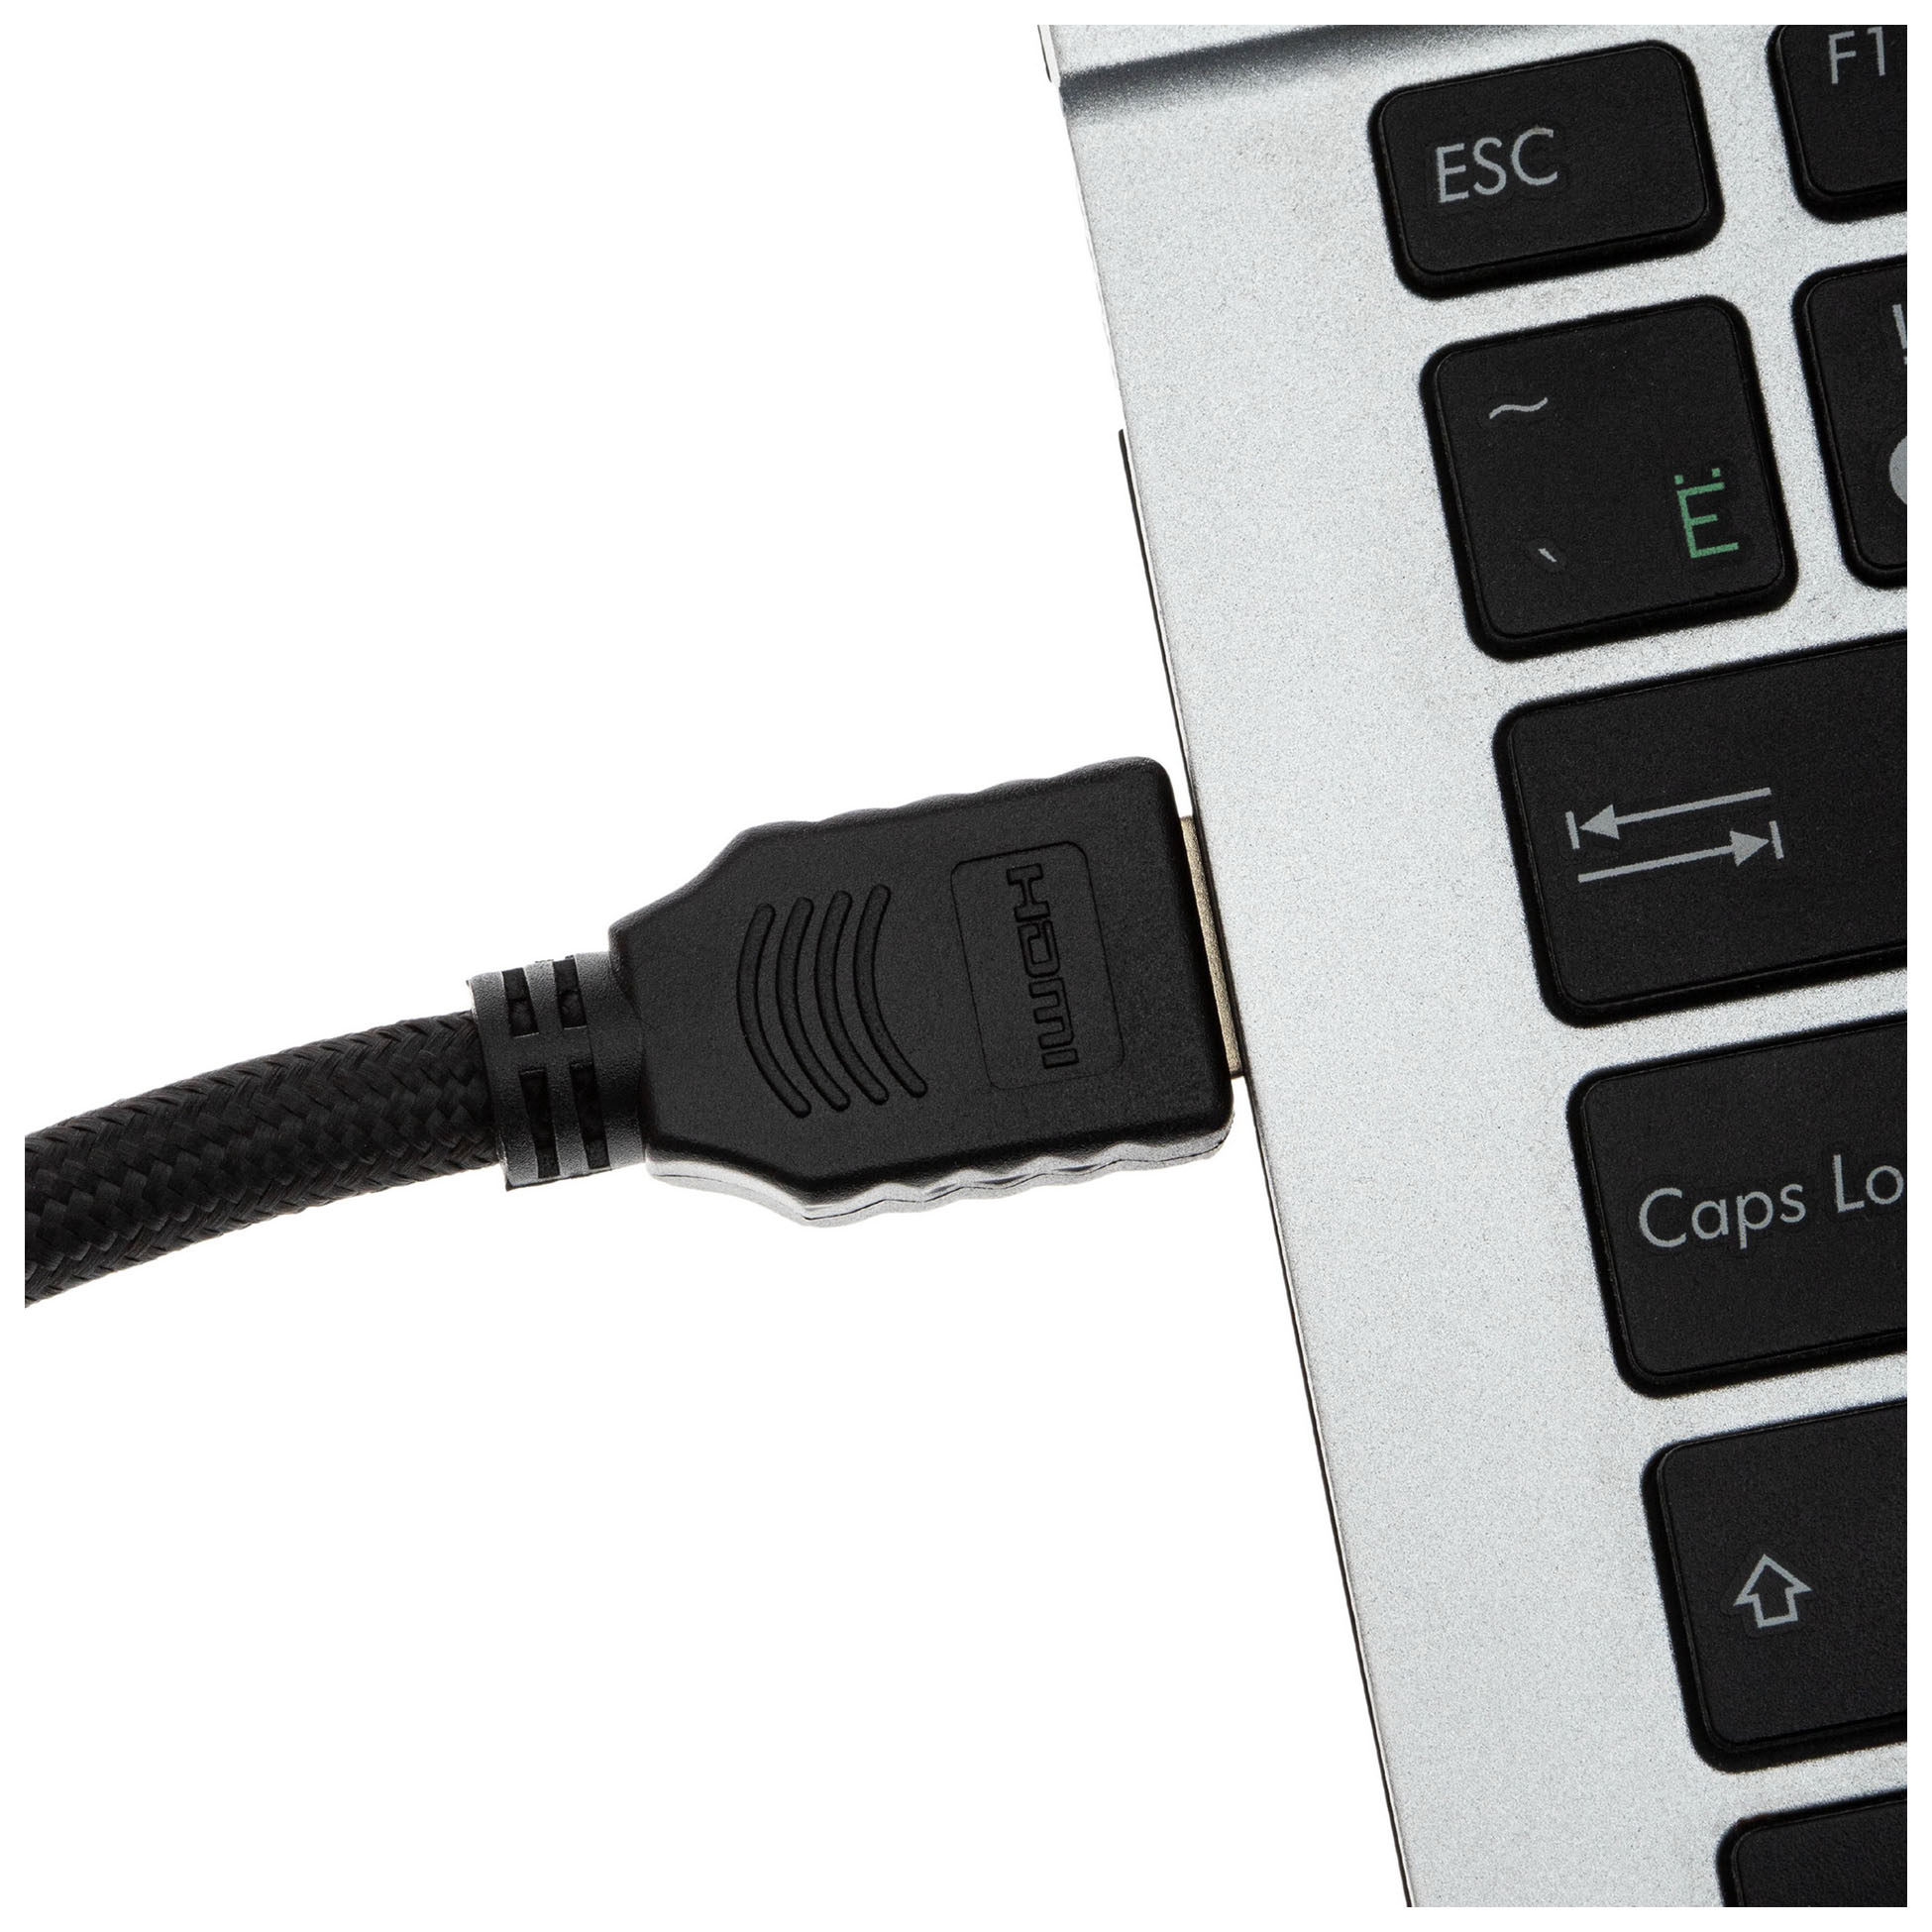 Кабель аудио-видео Cactus CS-HDMI.2-1 HDMI (m)/HDMI (m) 1м. позолоч.конт. черный